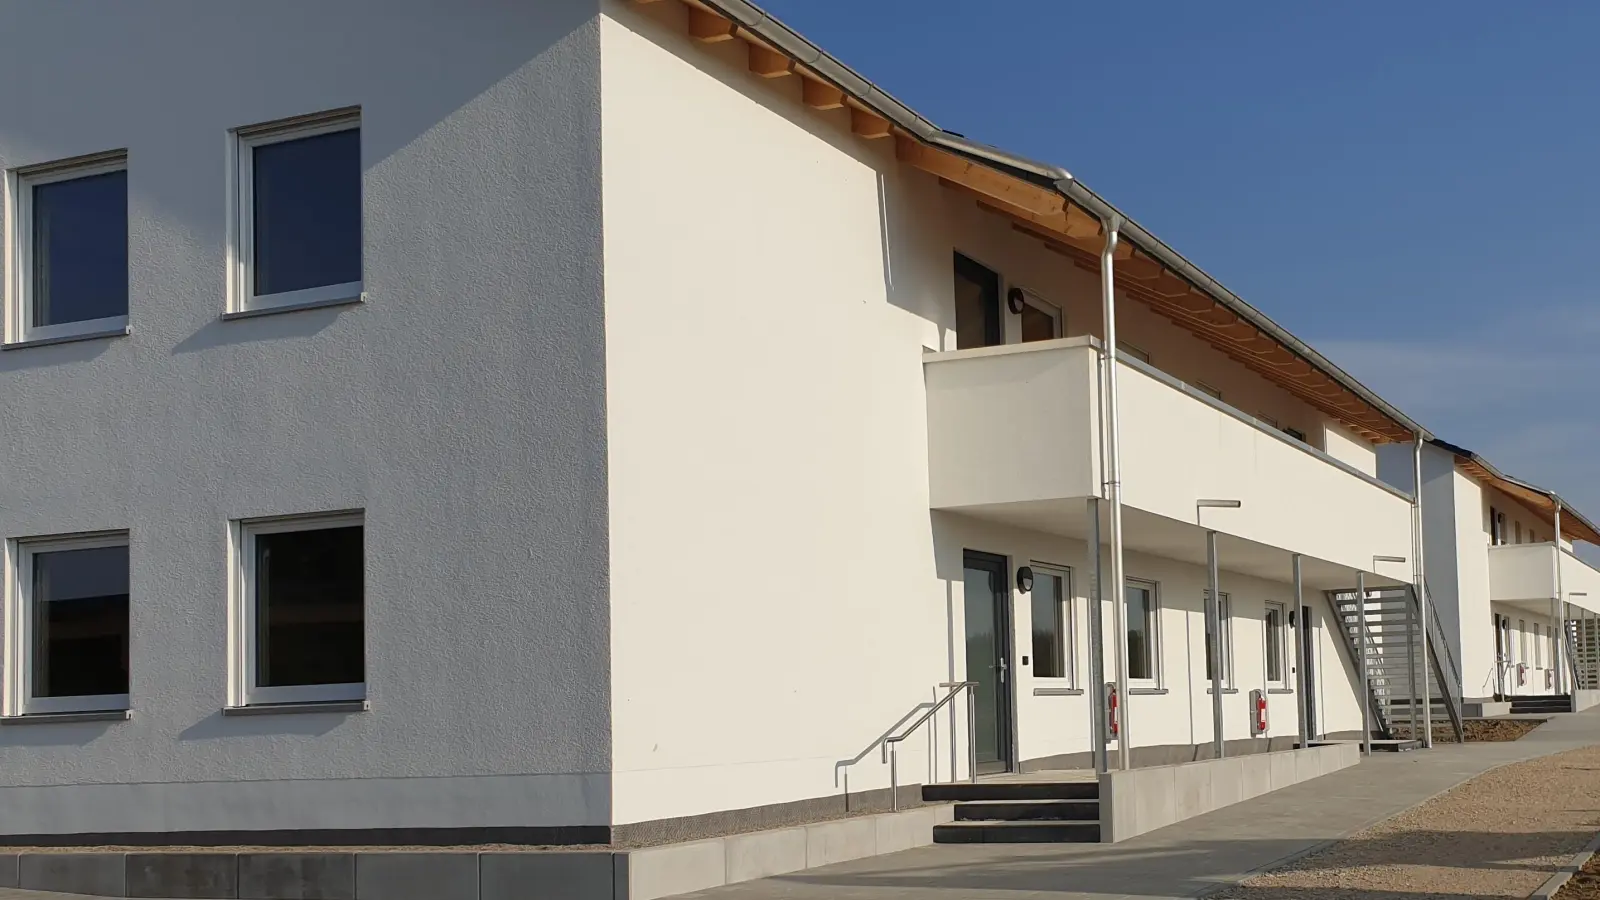 <b>Die Wohnungsbaugesellschaft</b> des Landkreises Dachau hat die zwei Häuser für Asylbewerber und Kriegsflüchtlinge in Erdweg gebaut, die zu Beginn des Jahres bezogen wurden. Weitere Wohnungen für Asylbewerber sollen noch gebaut werden. (Foto: Franz Hofner)